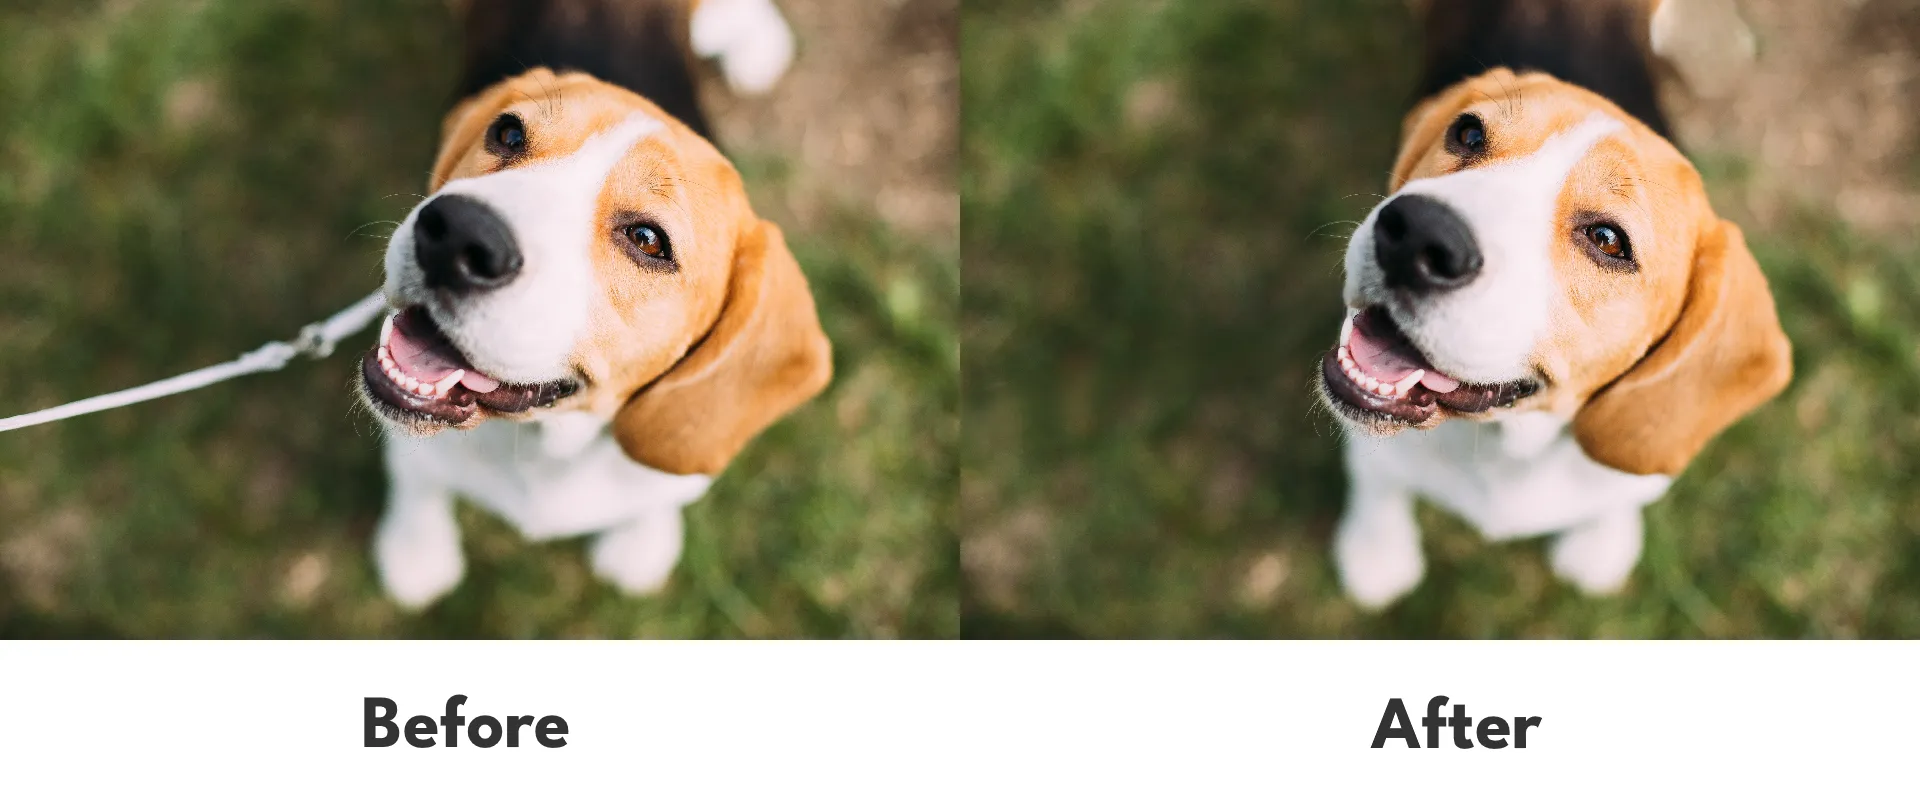 生成消去を使った編集前と編集後の比較画像。編集後の画像では犬のリードが自然に消去されている